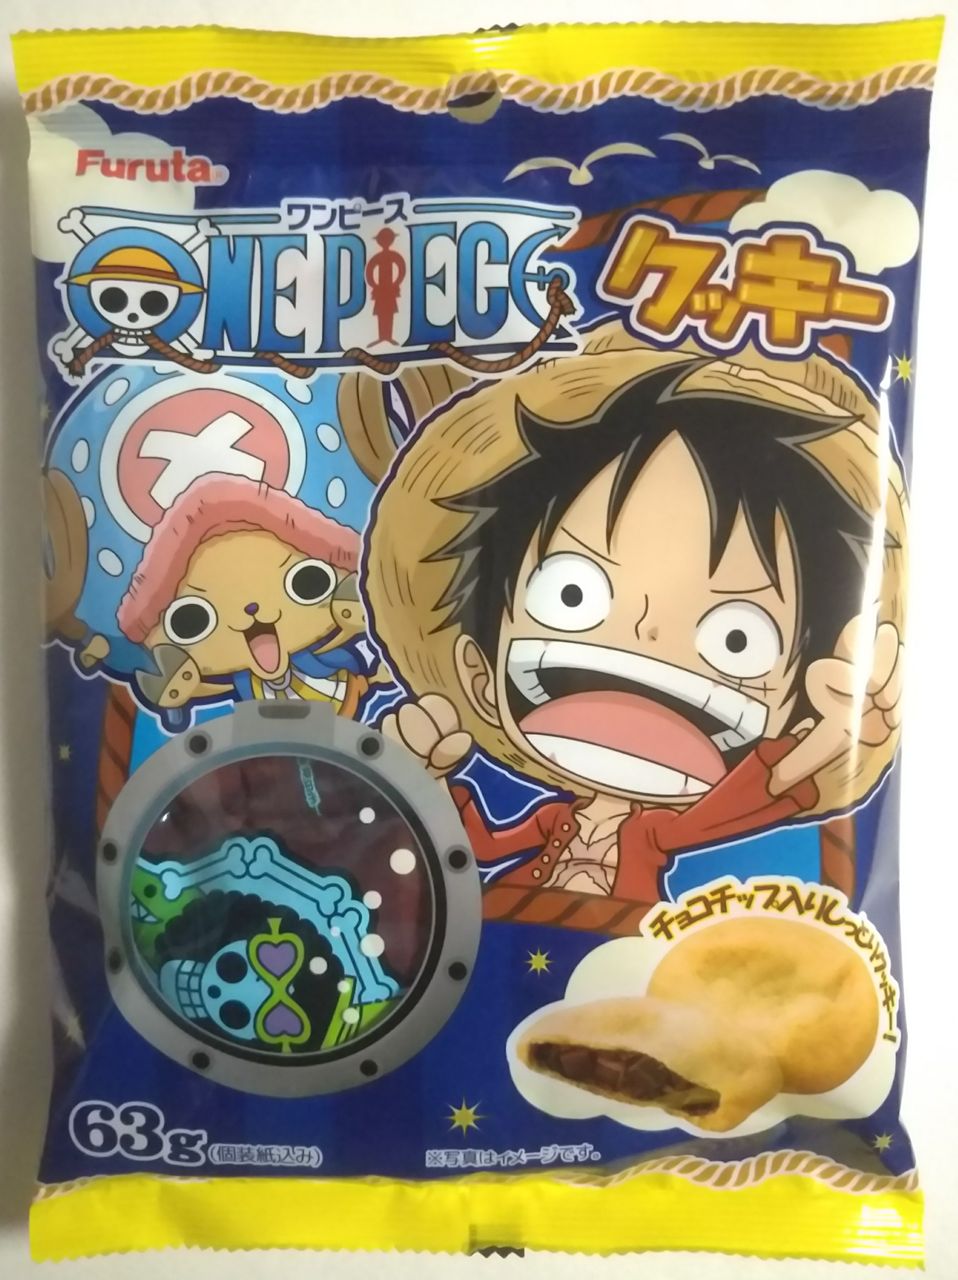 チョコチップ入りのソフトクッキー Furuta ワンピース クッキー Chaos Hobby Blog